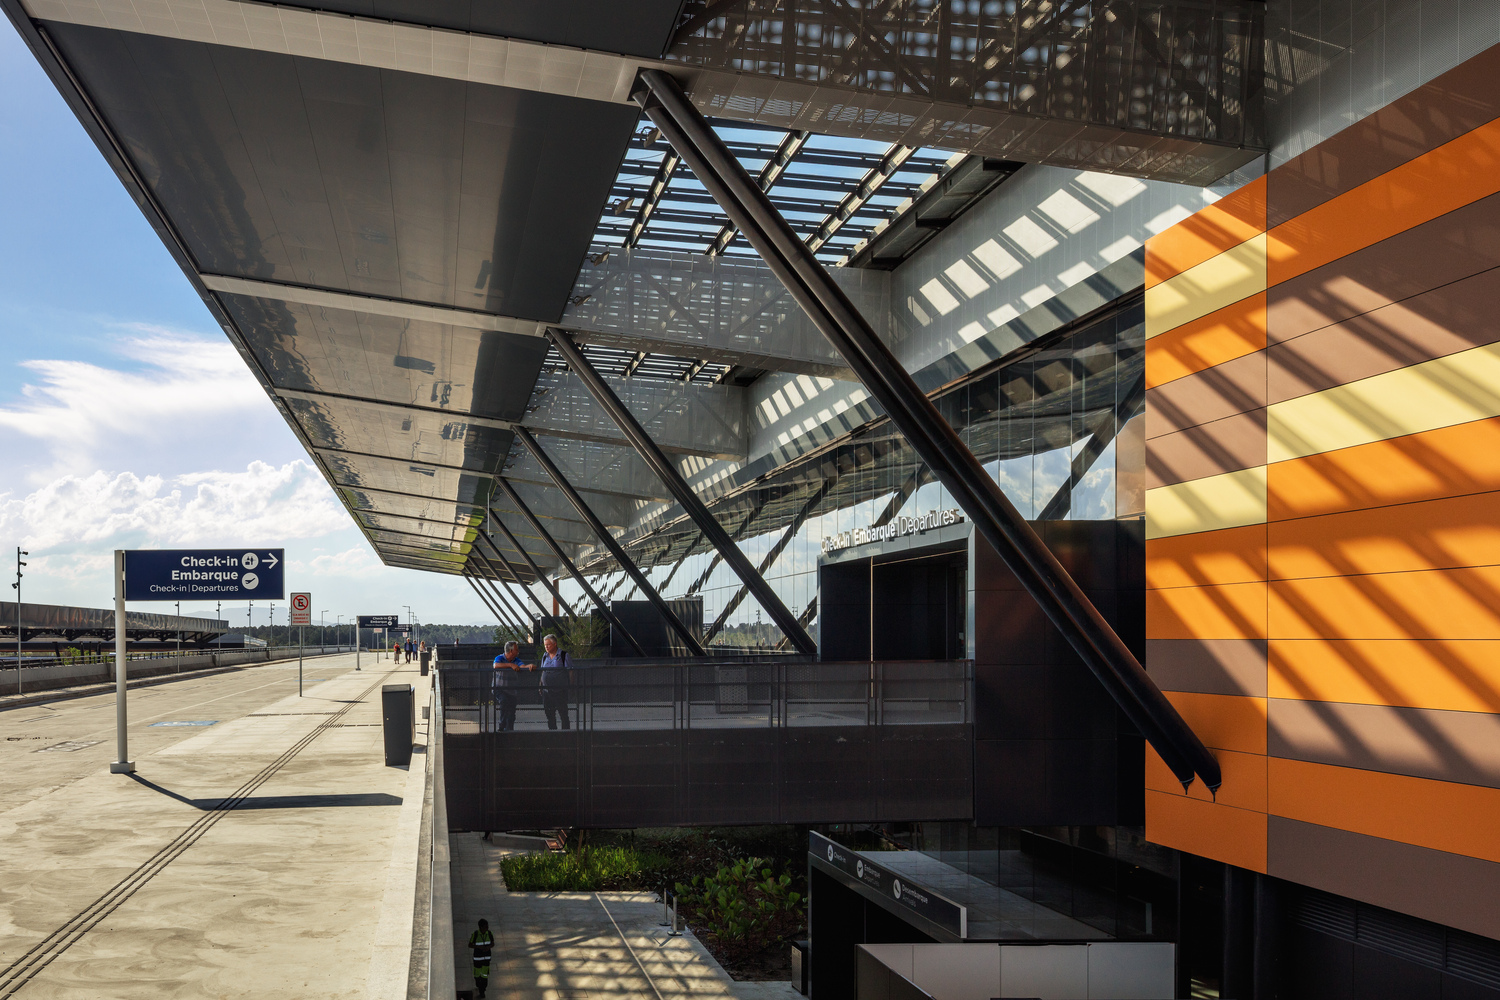  novo terminal do aeroporto de florianópolis - check in entrada